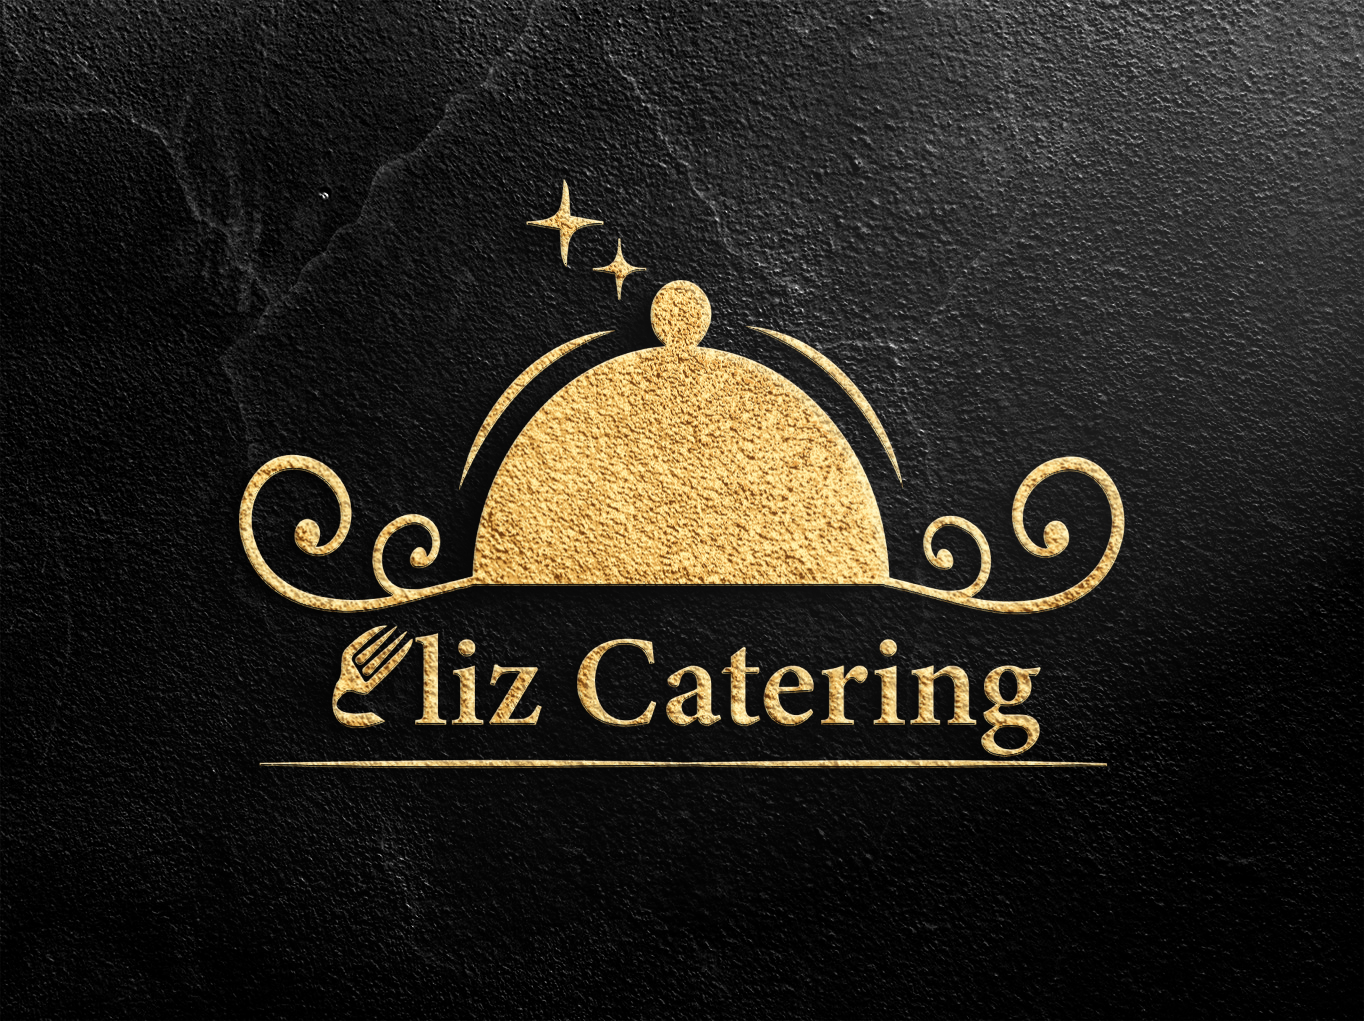 Eliz Catering